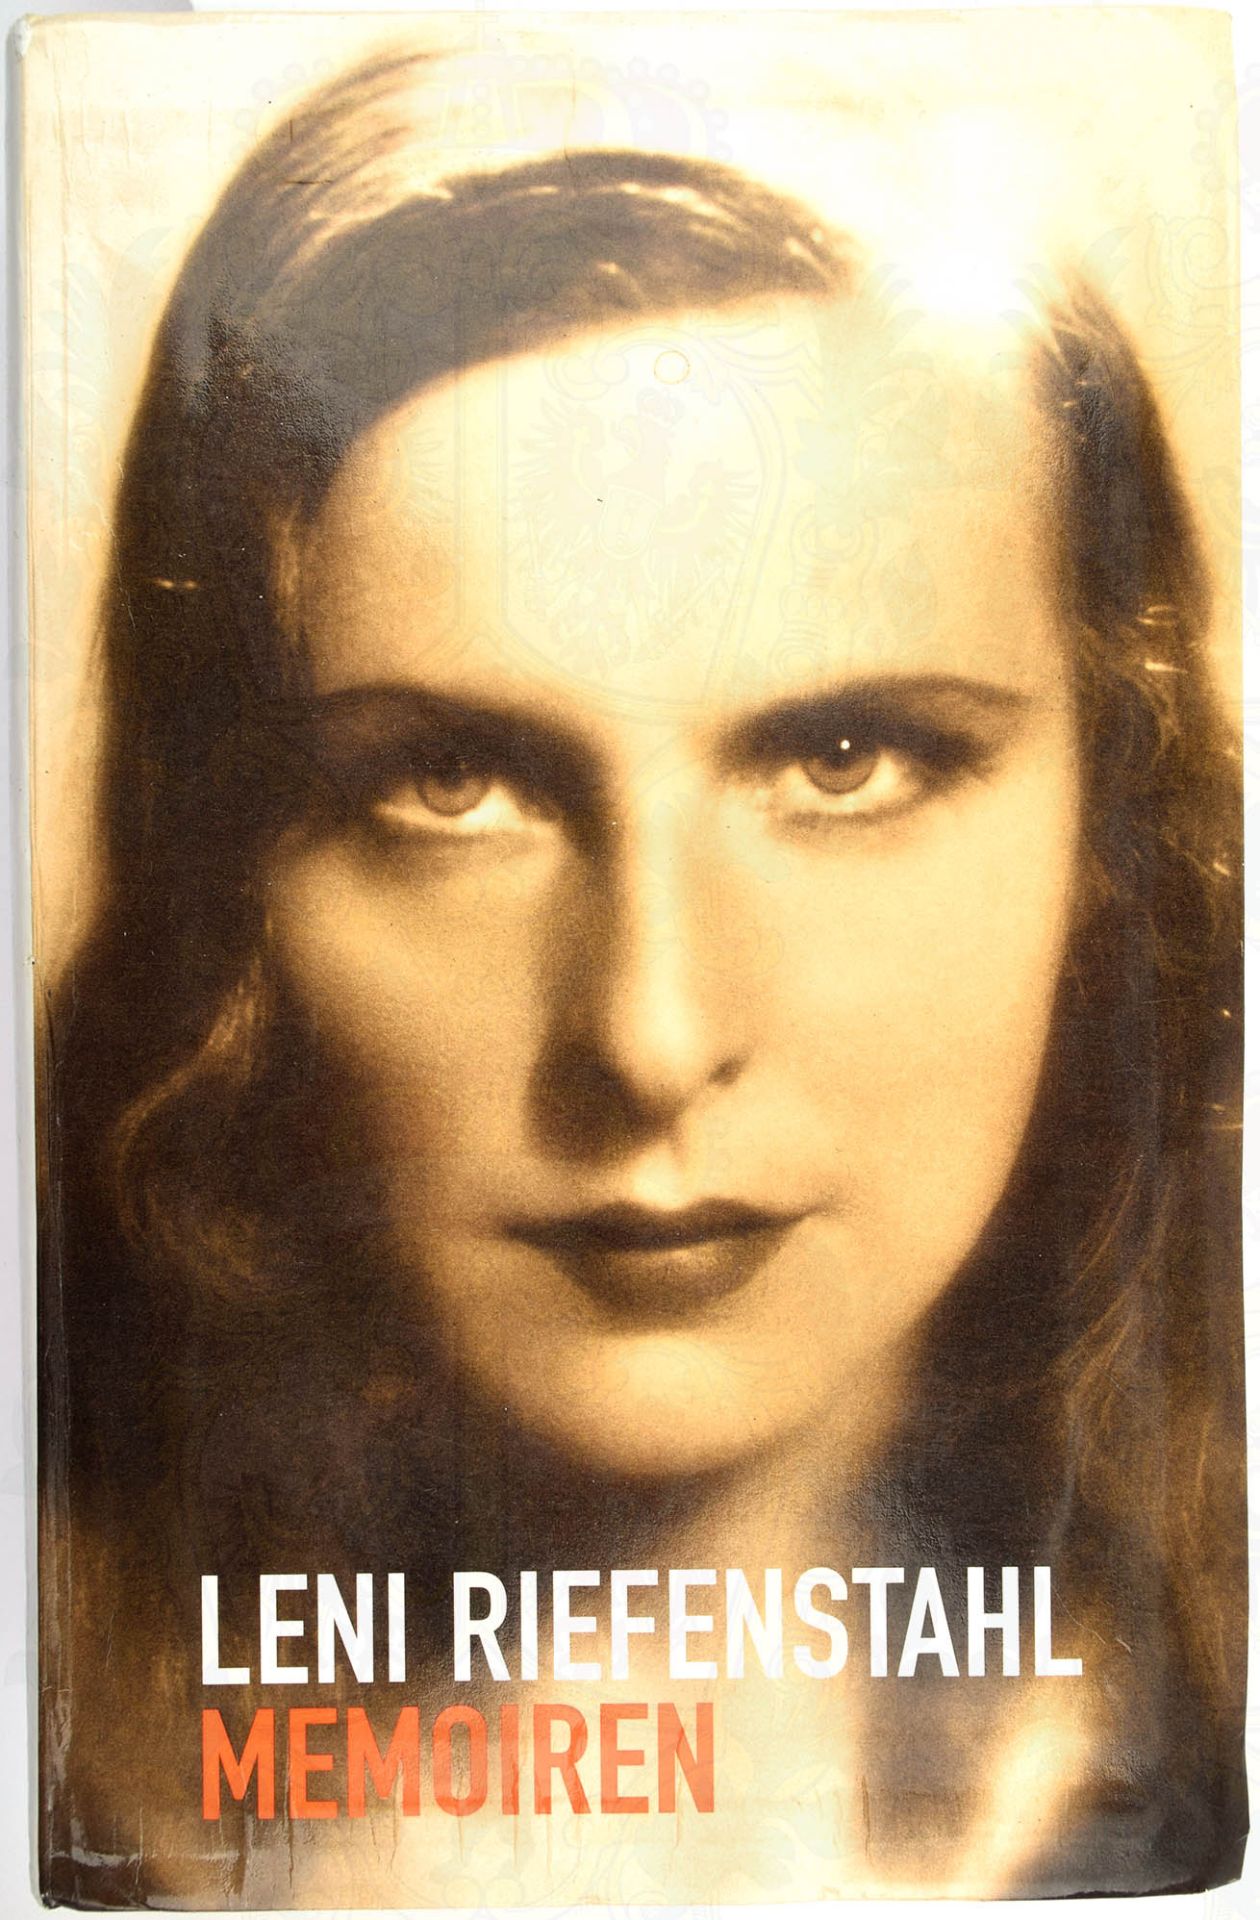 RIEFENSTAHL, LENI, (1902-2003), dt. Schauspielerin u. Regisseurin (Film Triumph des Willens 1935),